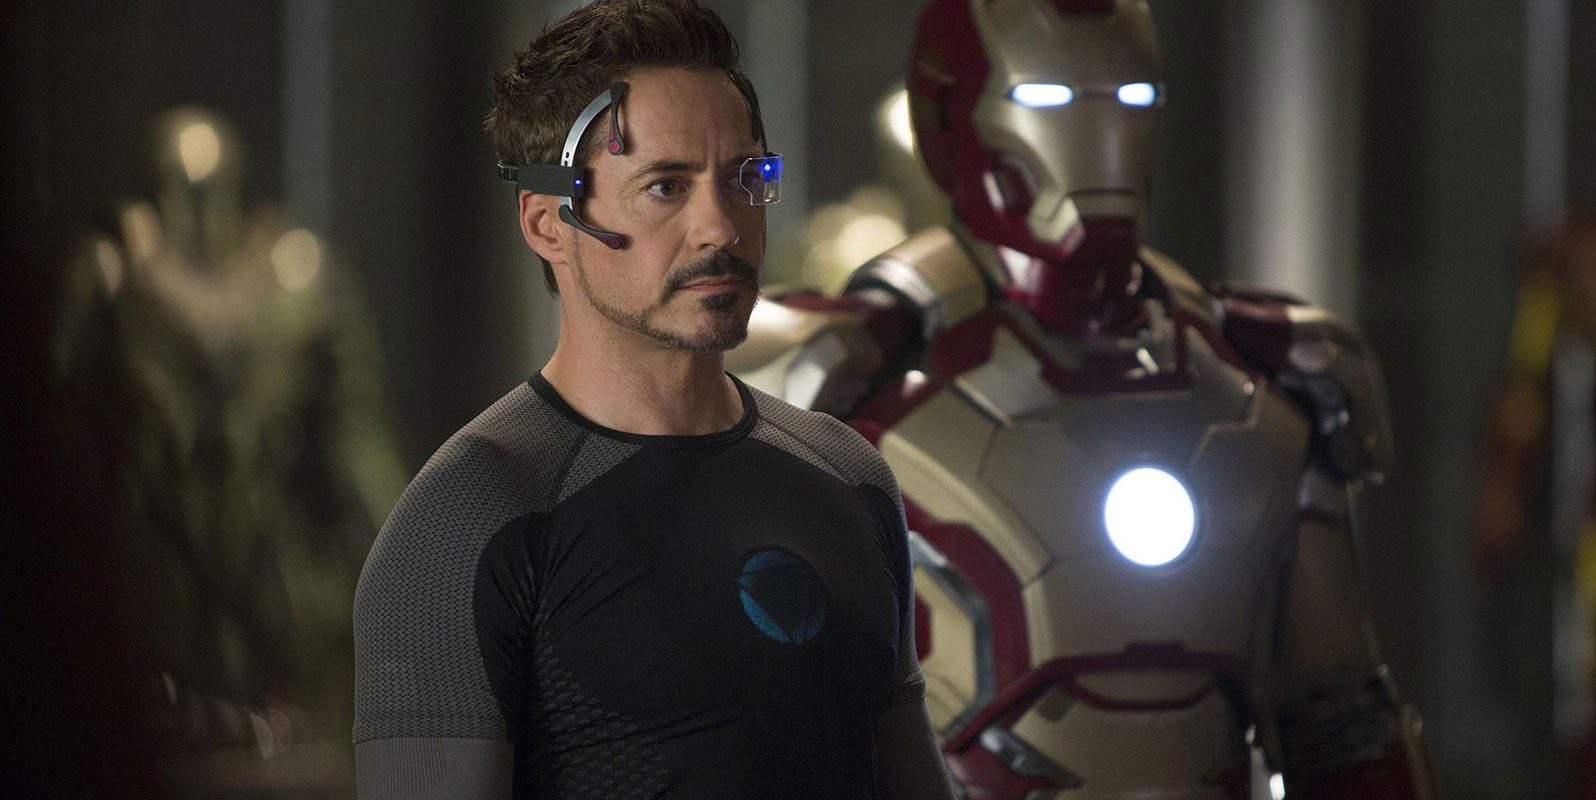 ¡Mirá el emotivo homenaje que le hicieron a Iron Man en Italia!